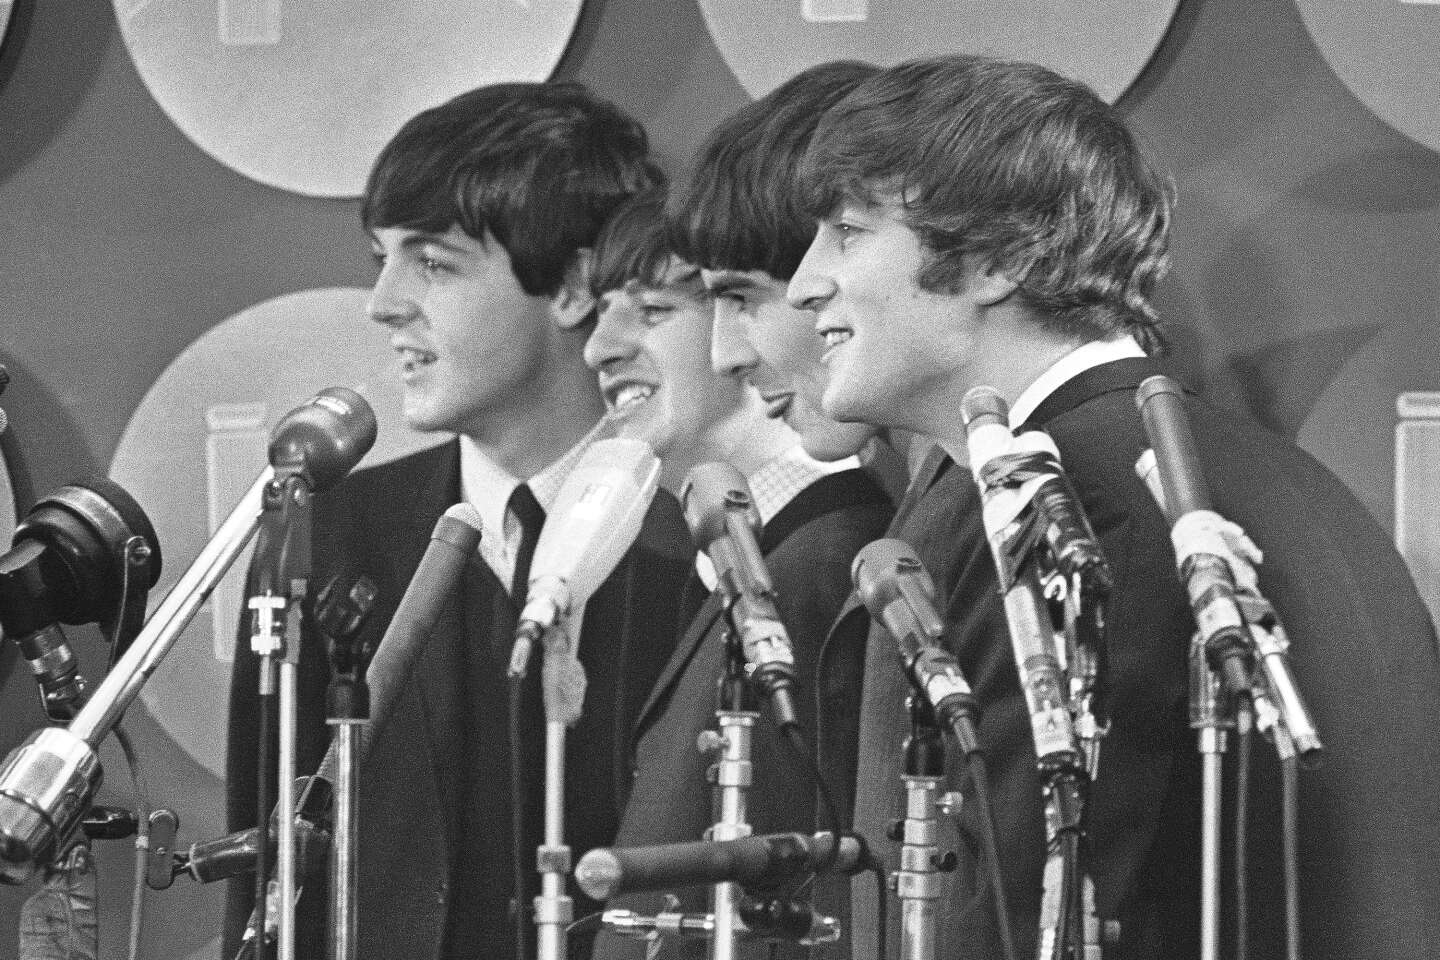 Une série de biopics sur les Beatles est en préparation, avec un film pour chacun des Fab Four